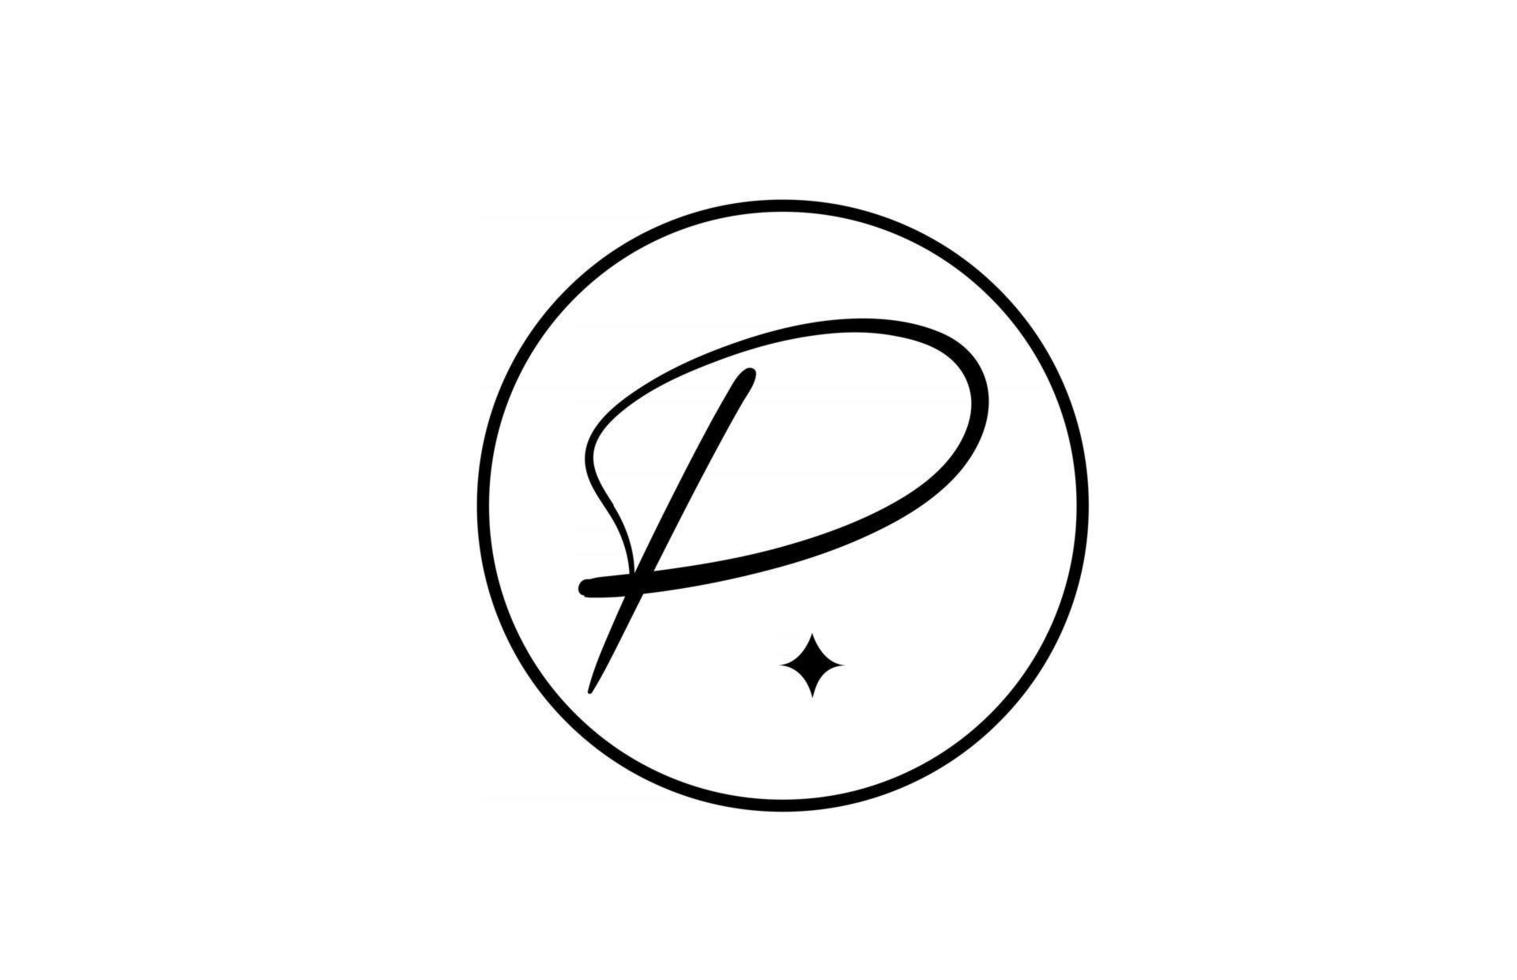 p alfabet letter logo voor zaken met ster en cirkel. eenvoudige elegante belettering voor bedrijf. huisstijl branding icoon ontwerp in wit en zwart vector